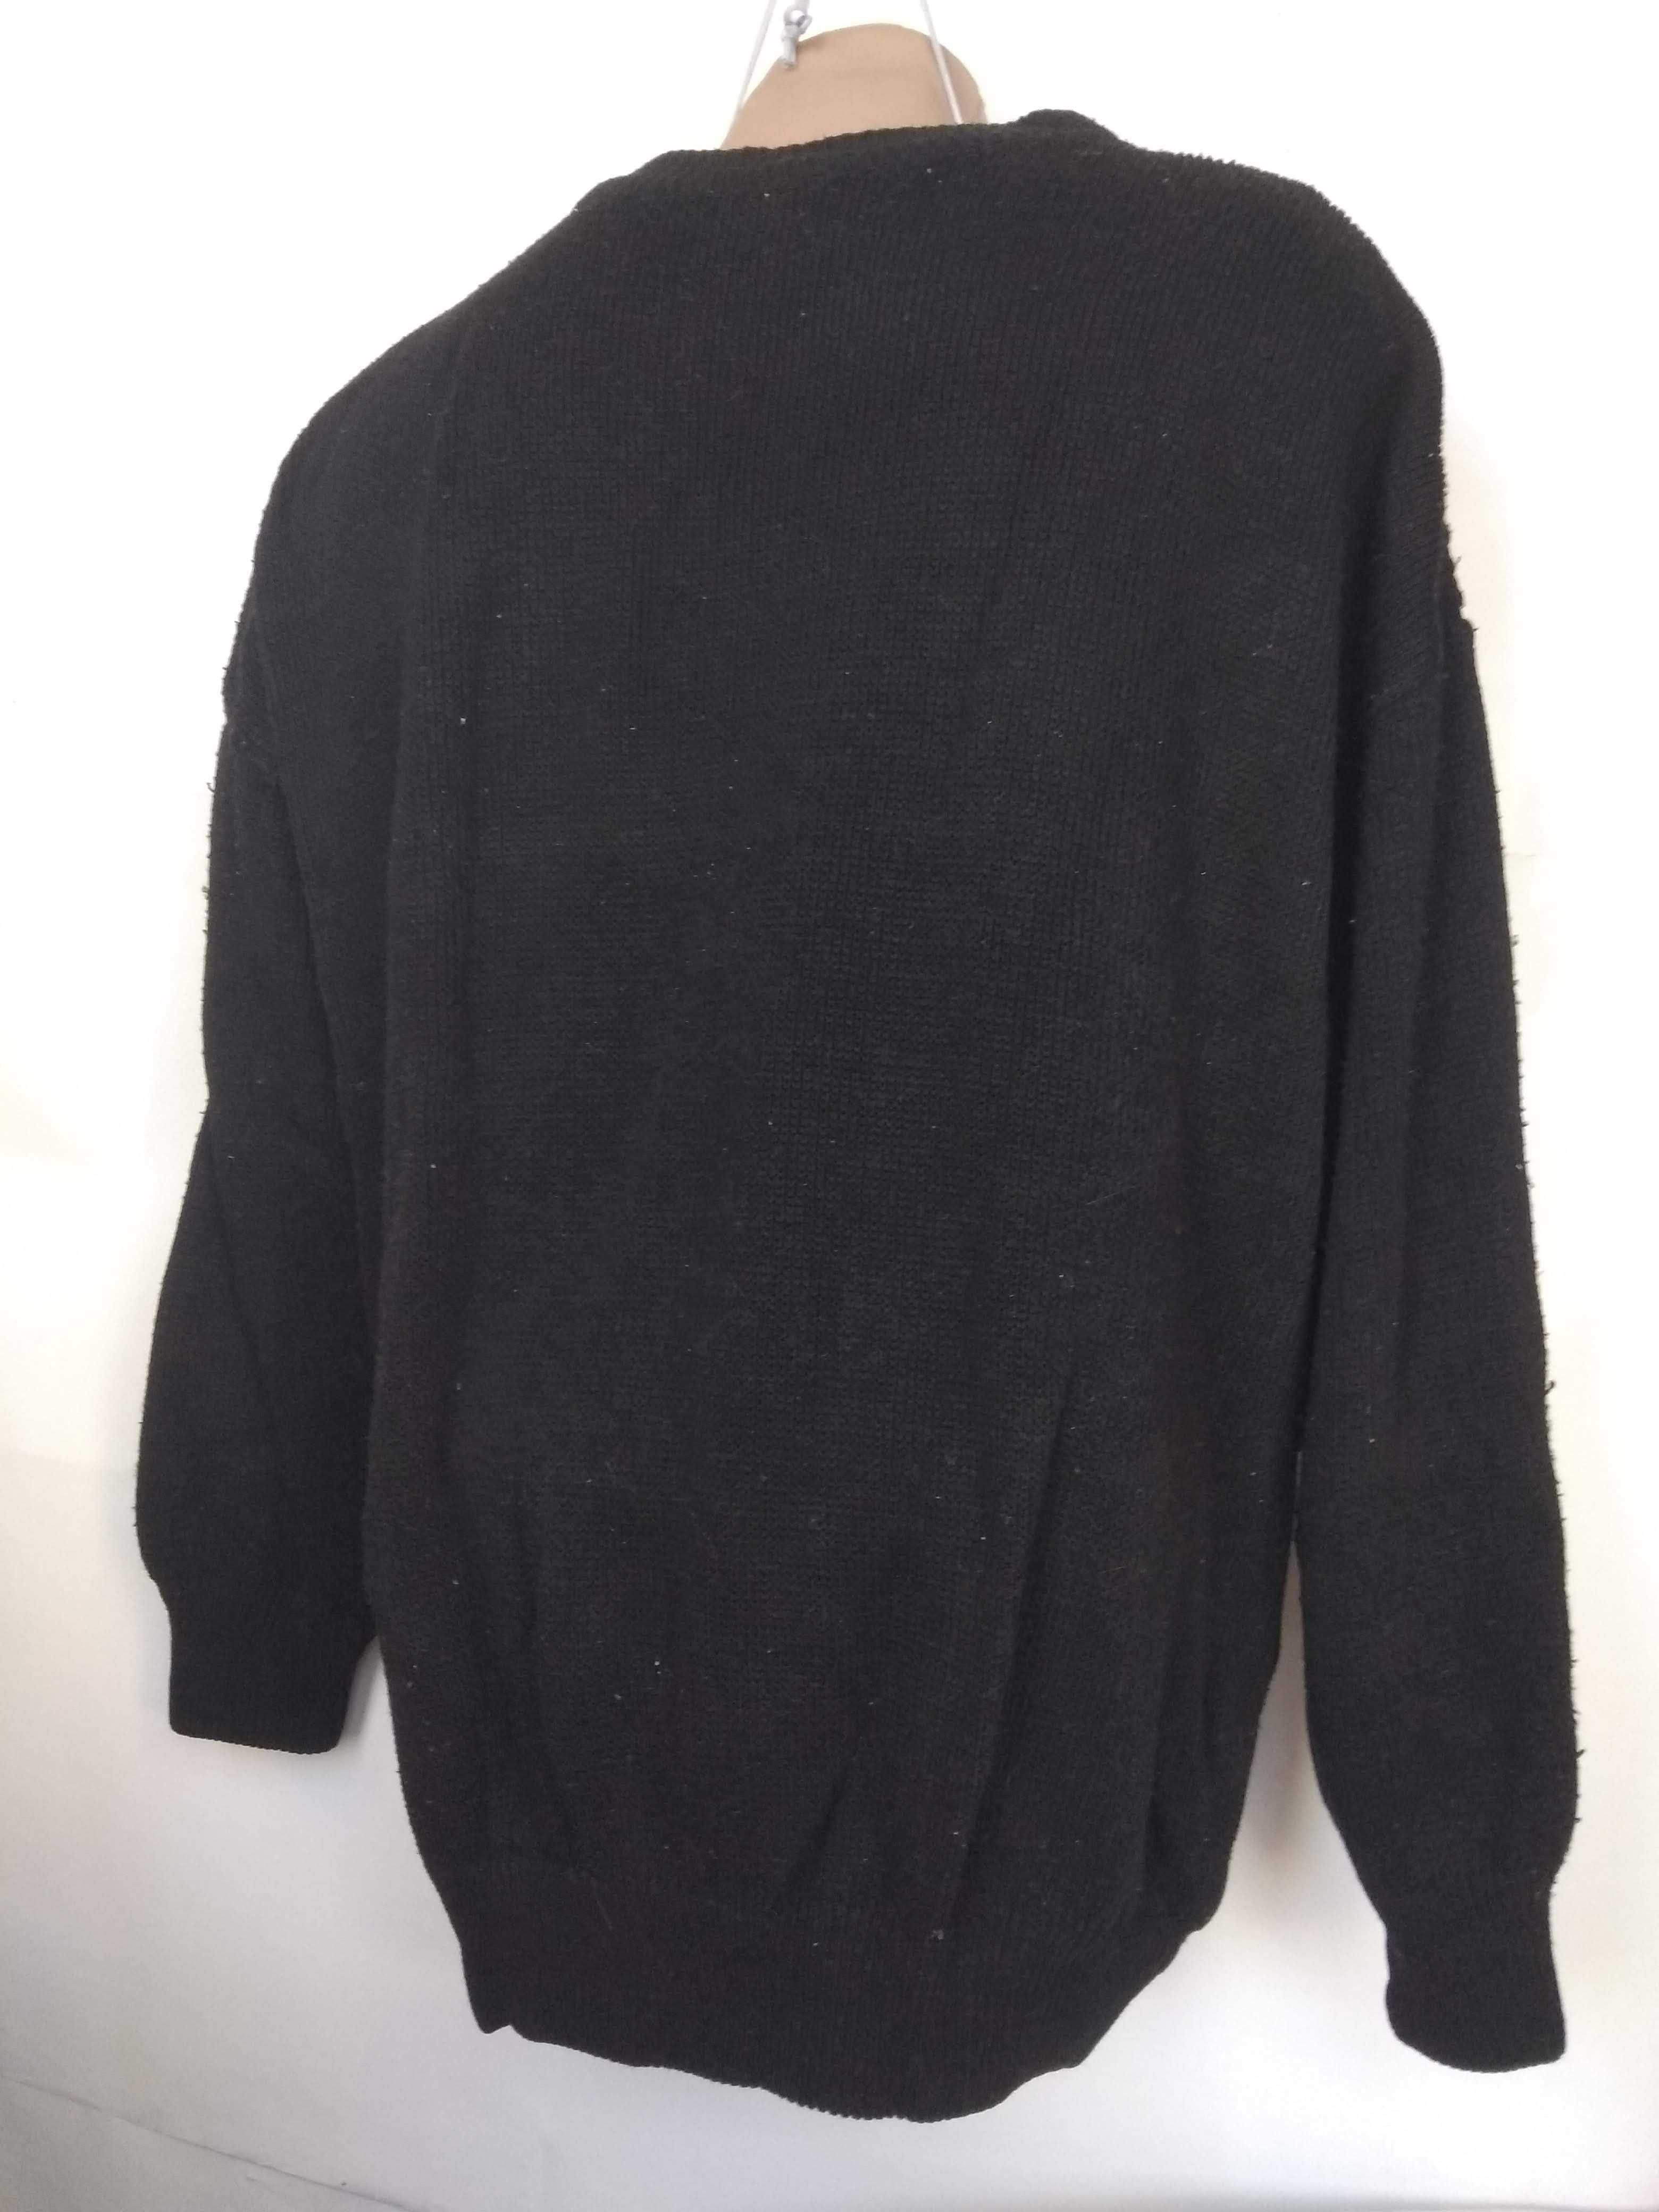 Черный мужской свитер 56 размер на рост 170см